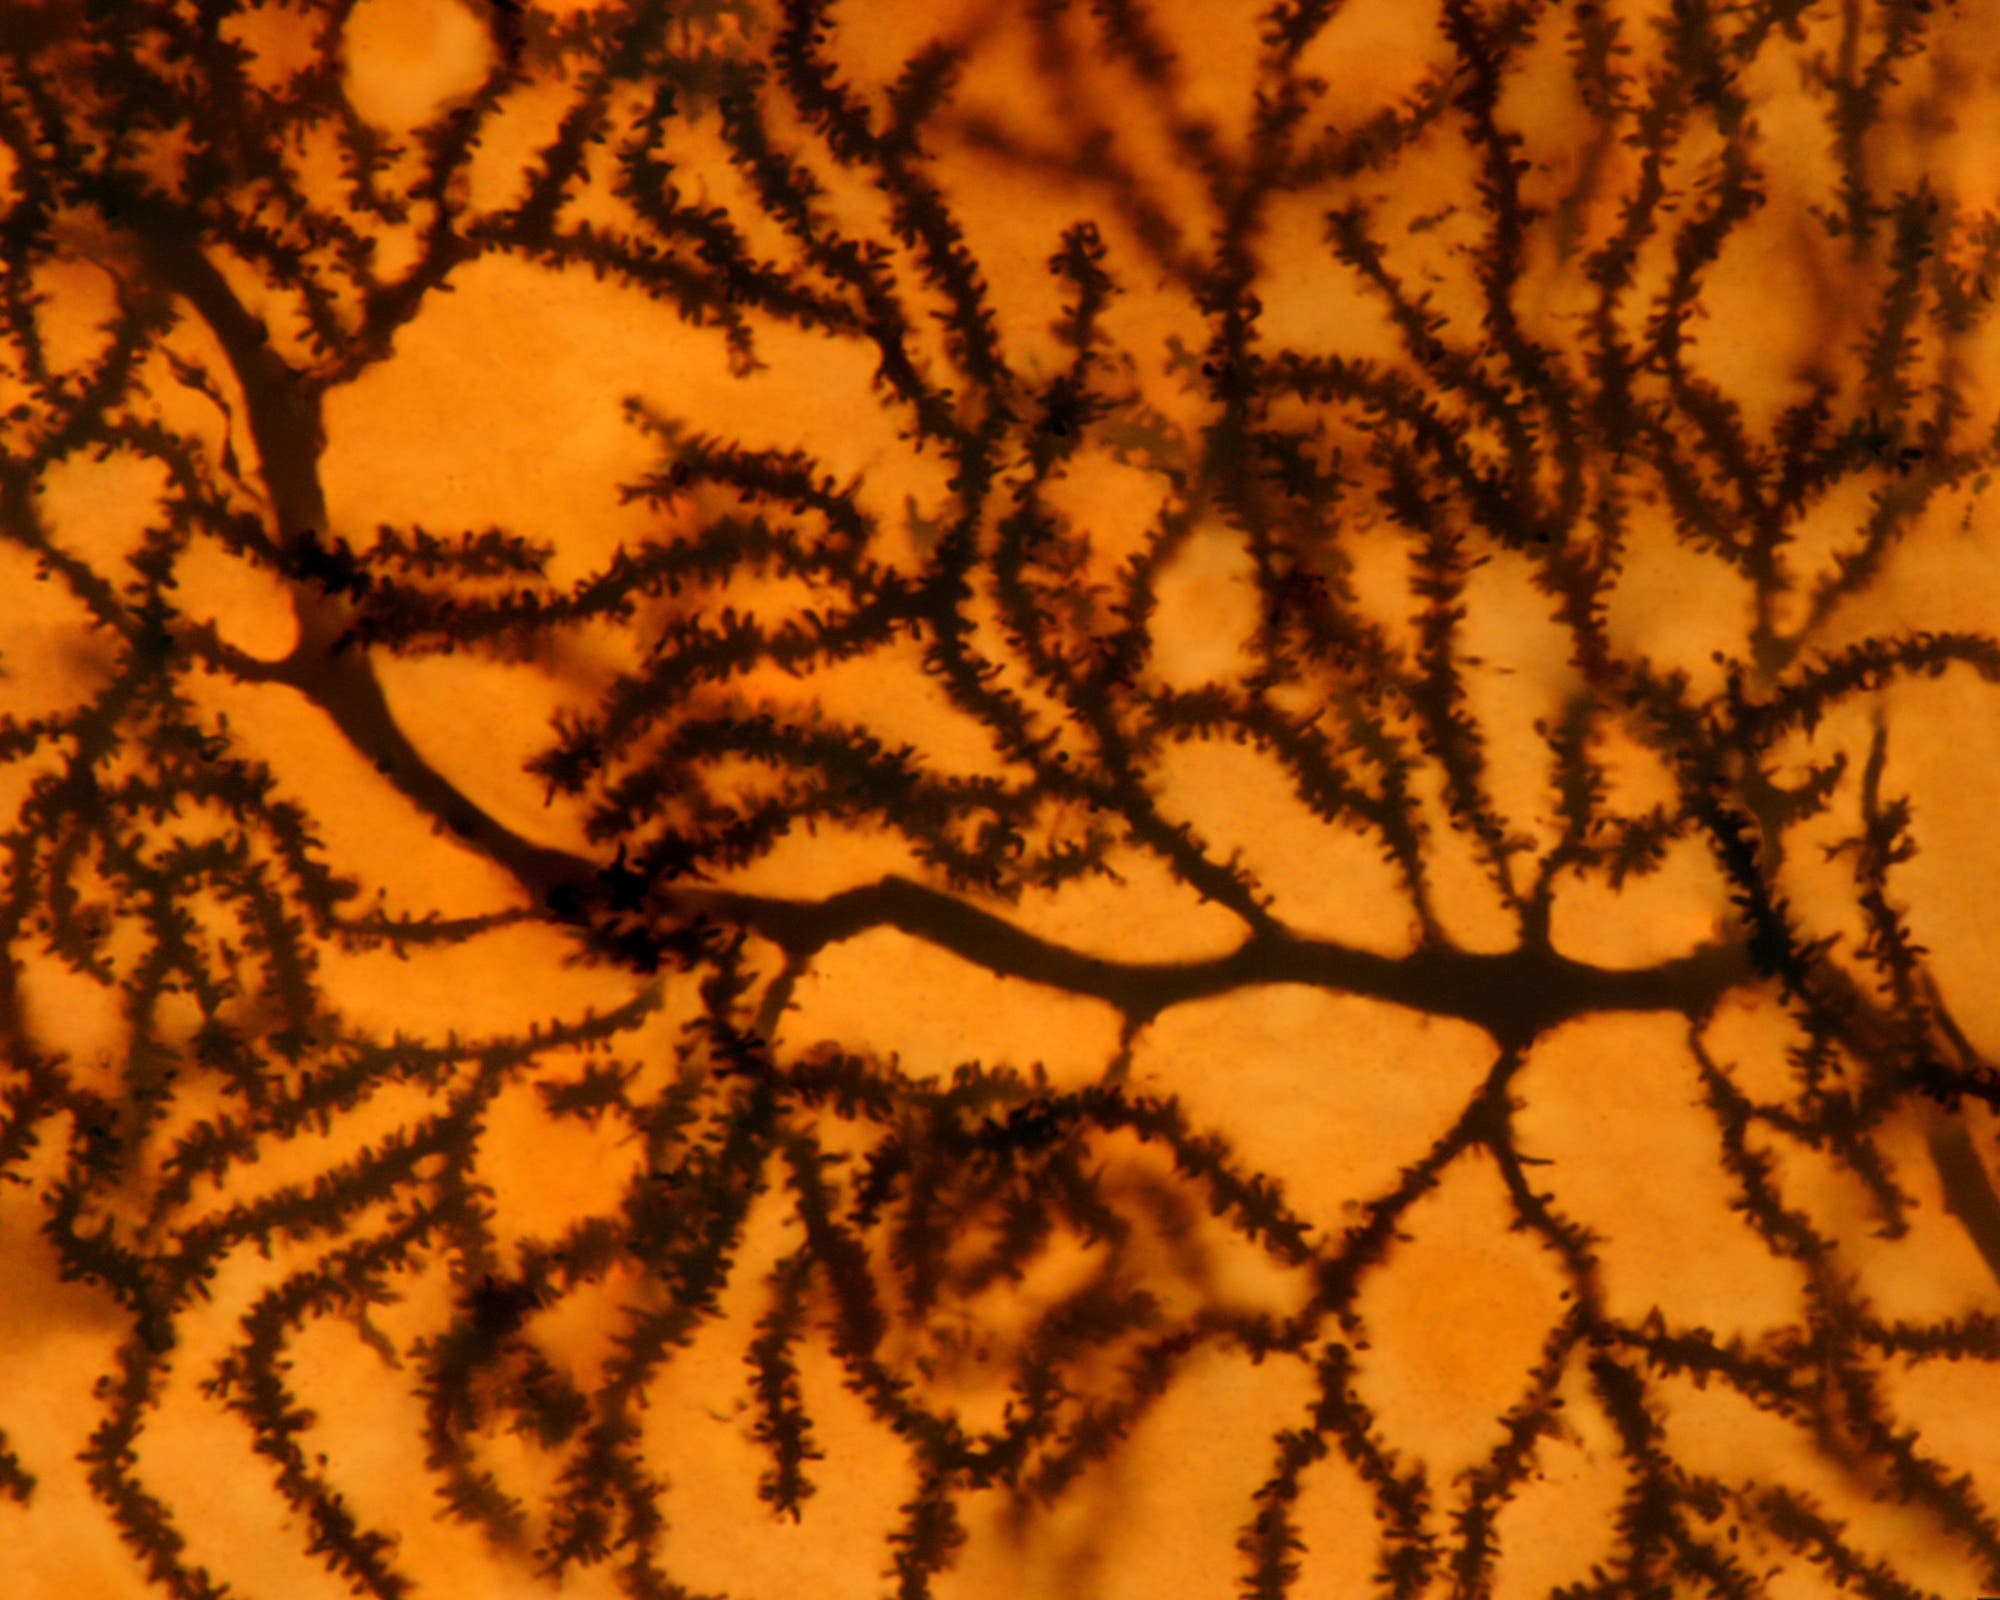 Die Dornenfortsätze auf den Dendriten einer Purkinjezelle in Großaufnahme unter dem Lichtmikroskop.